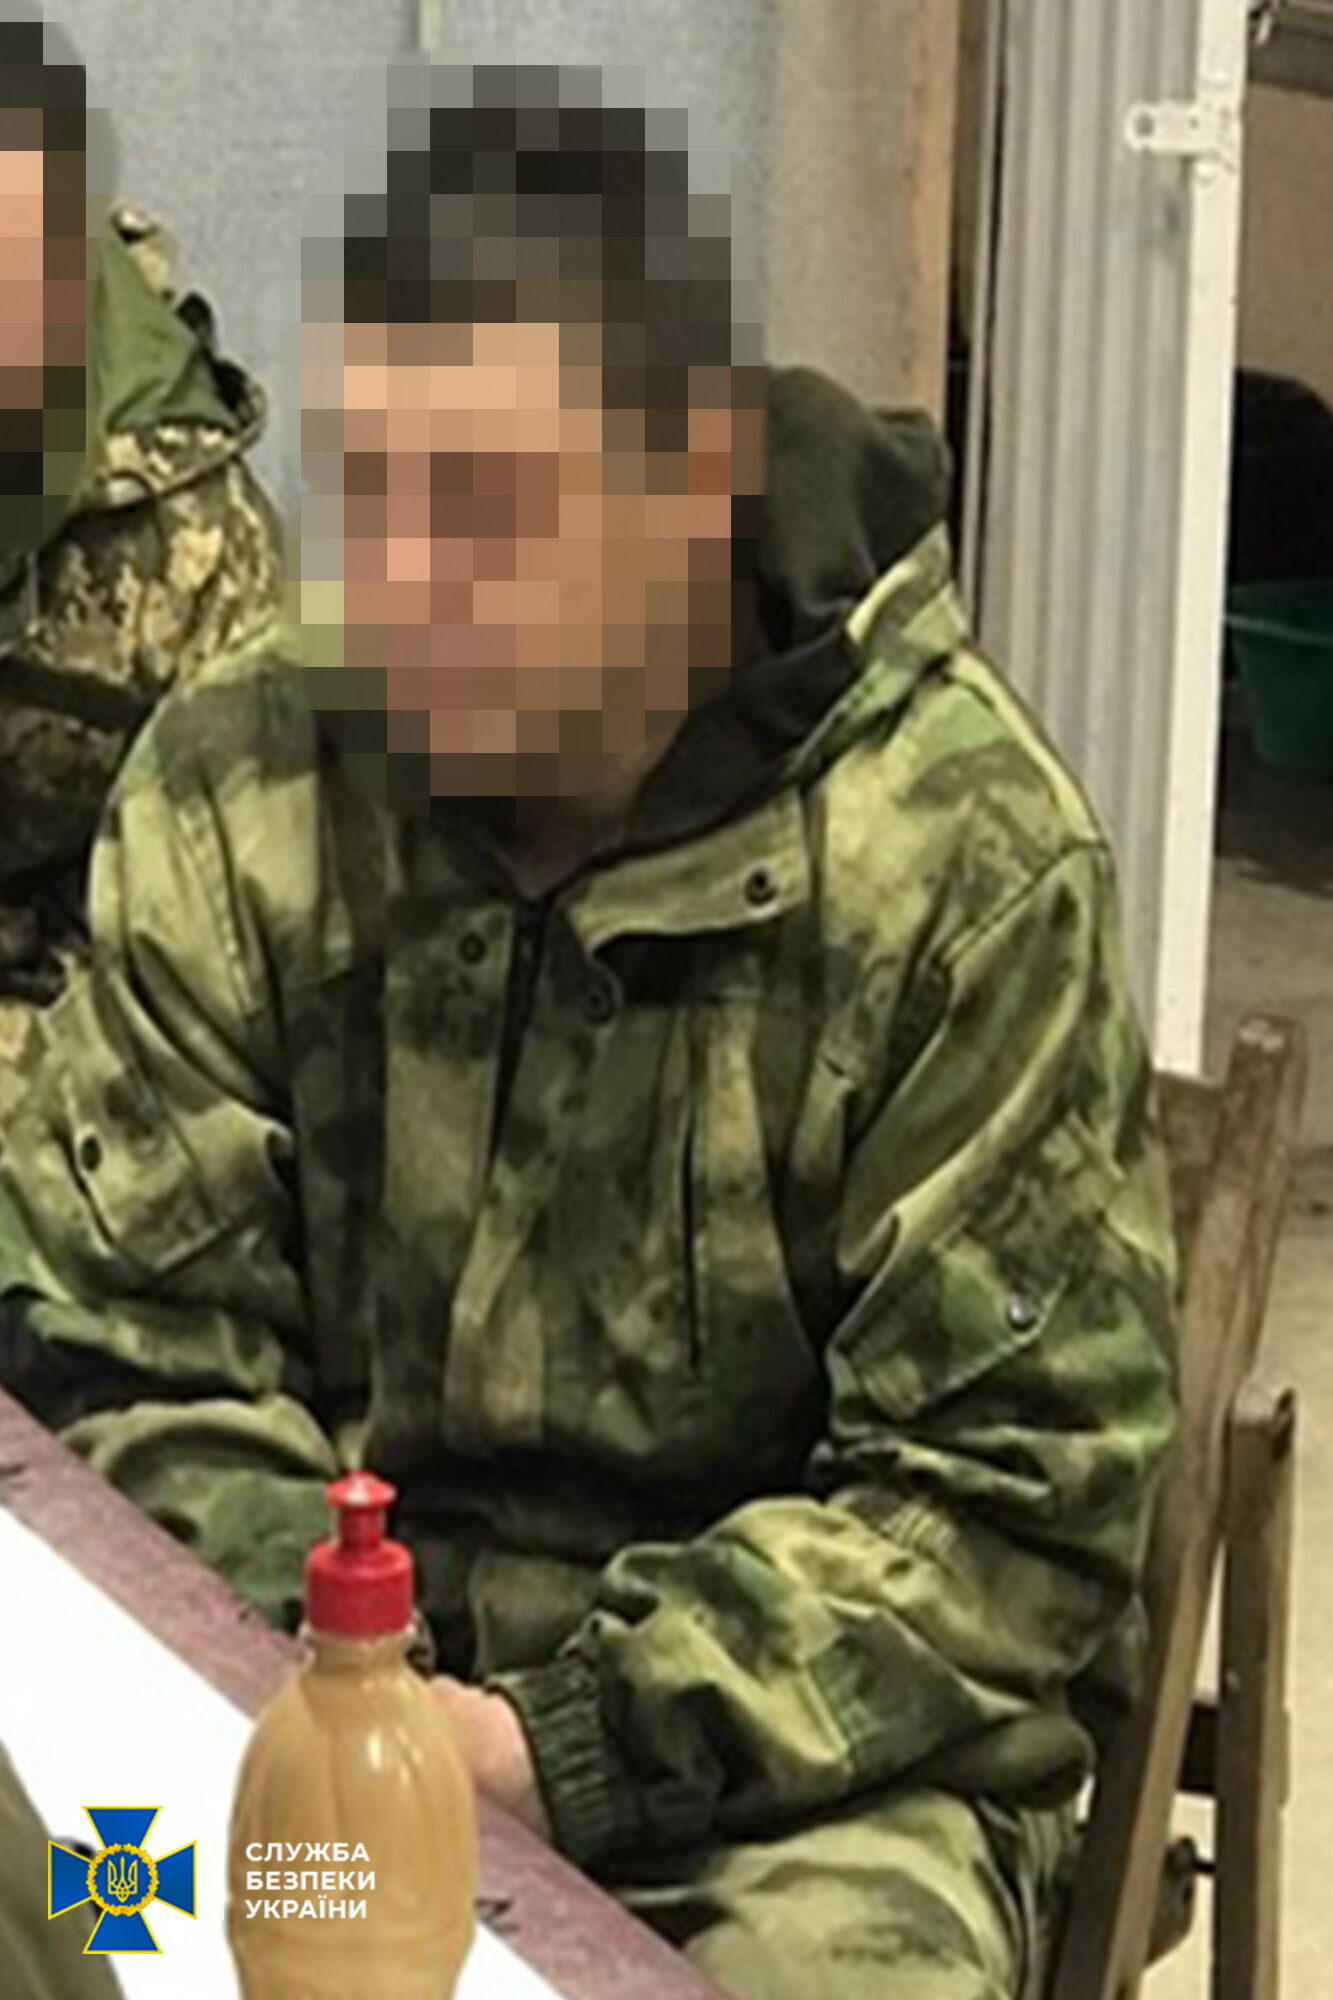 Боевик "ЛНР", задержанный правоохранителями .